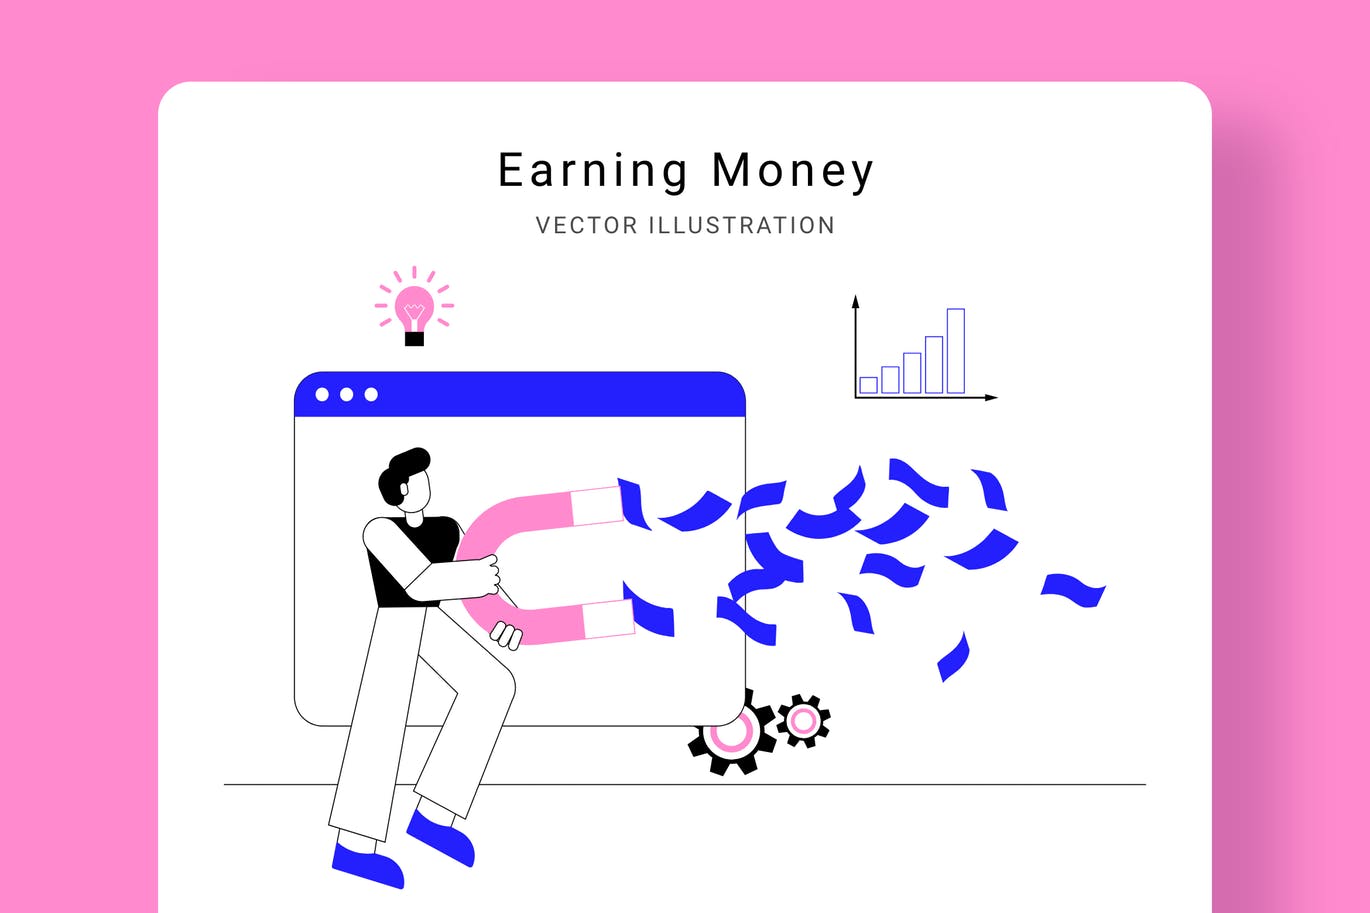 吸金磁石矢量非凡图库精选概念插画设计素材 Earning Money Vector Illustration Scene插图